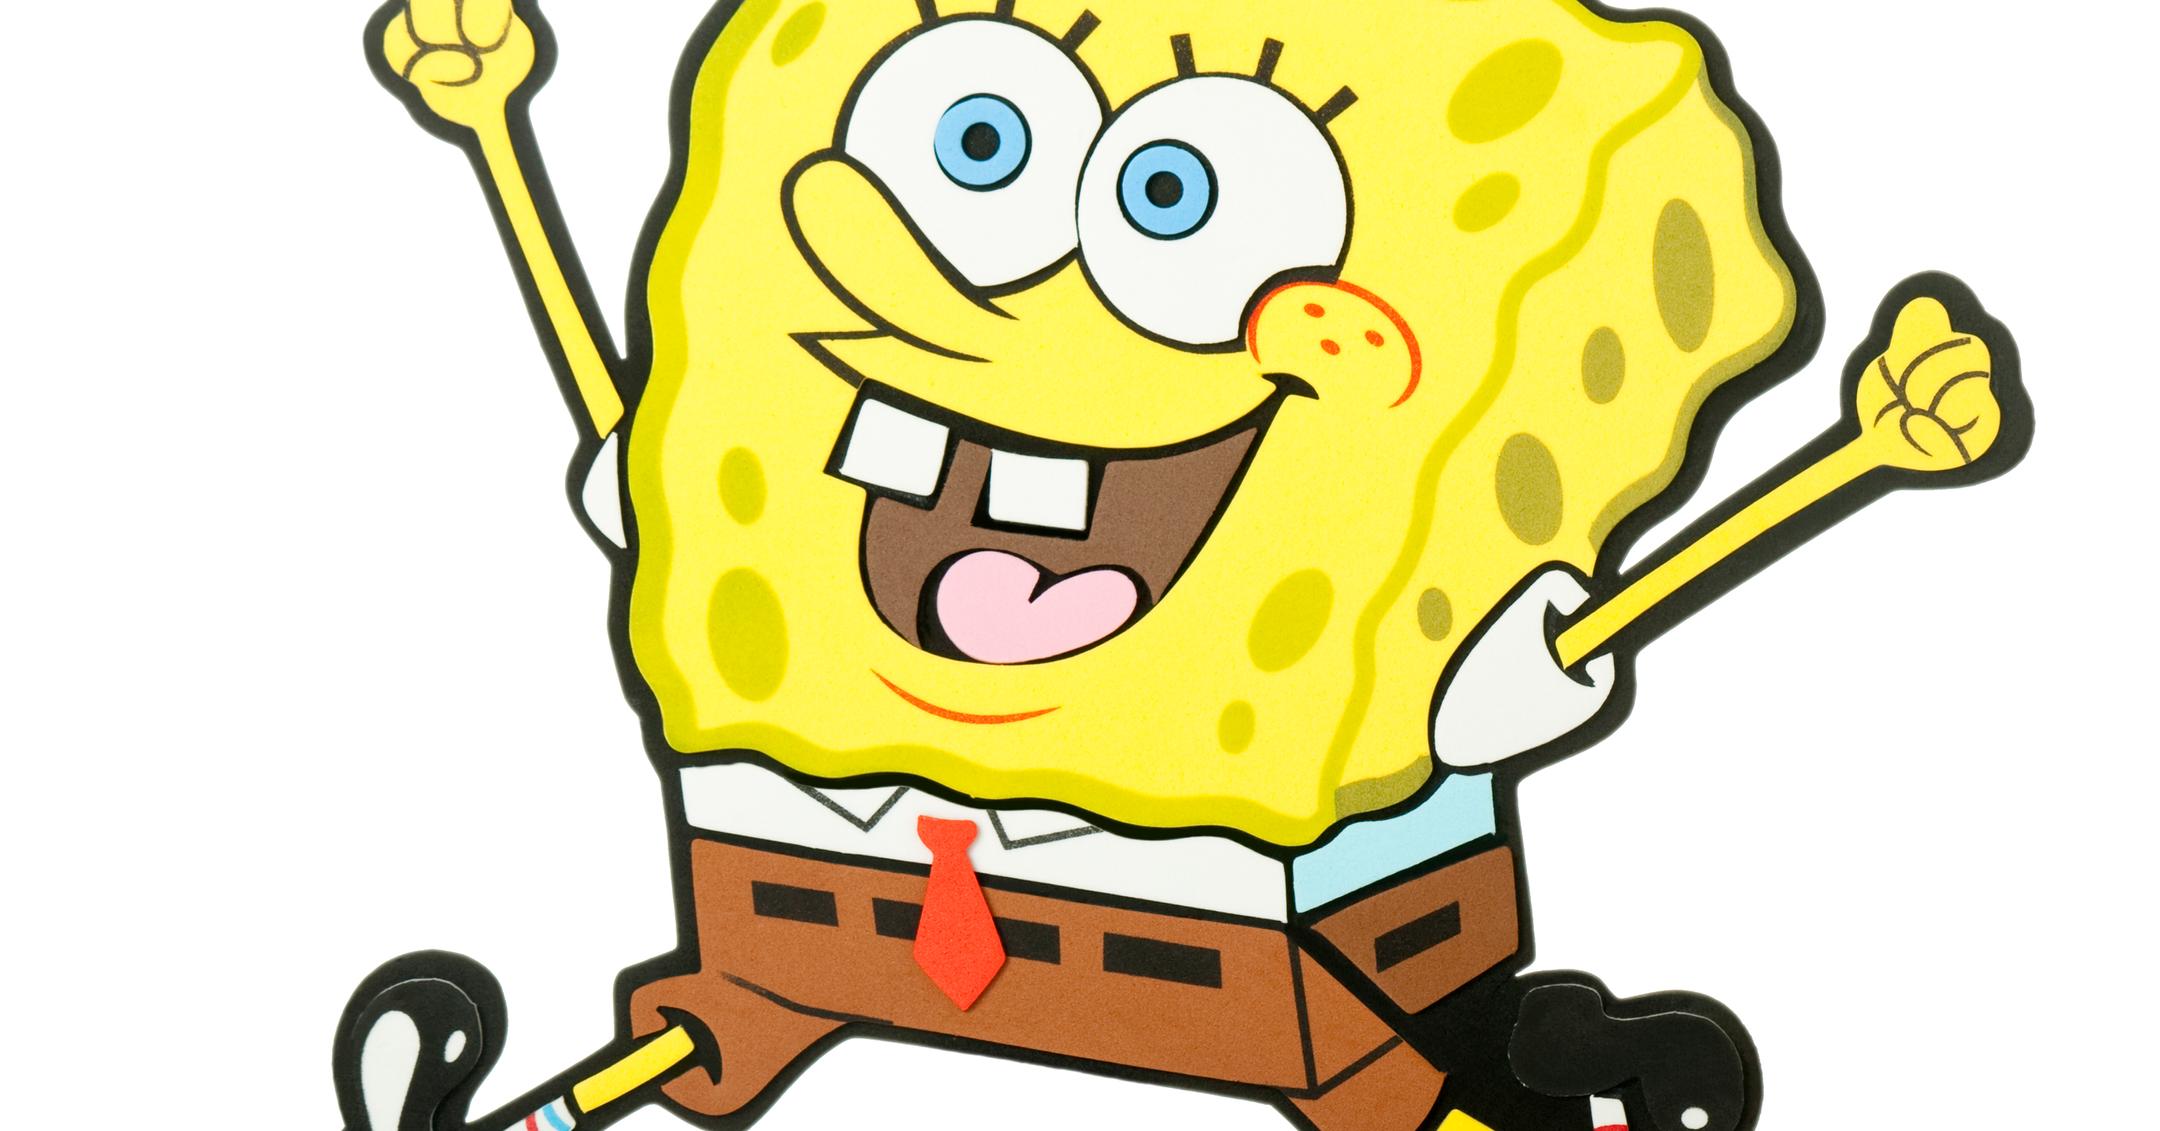 What Gender Is Spongebob Squarepants Is The Character Male Or Female - spongebob squarepants the roblox serieslist of characters